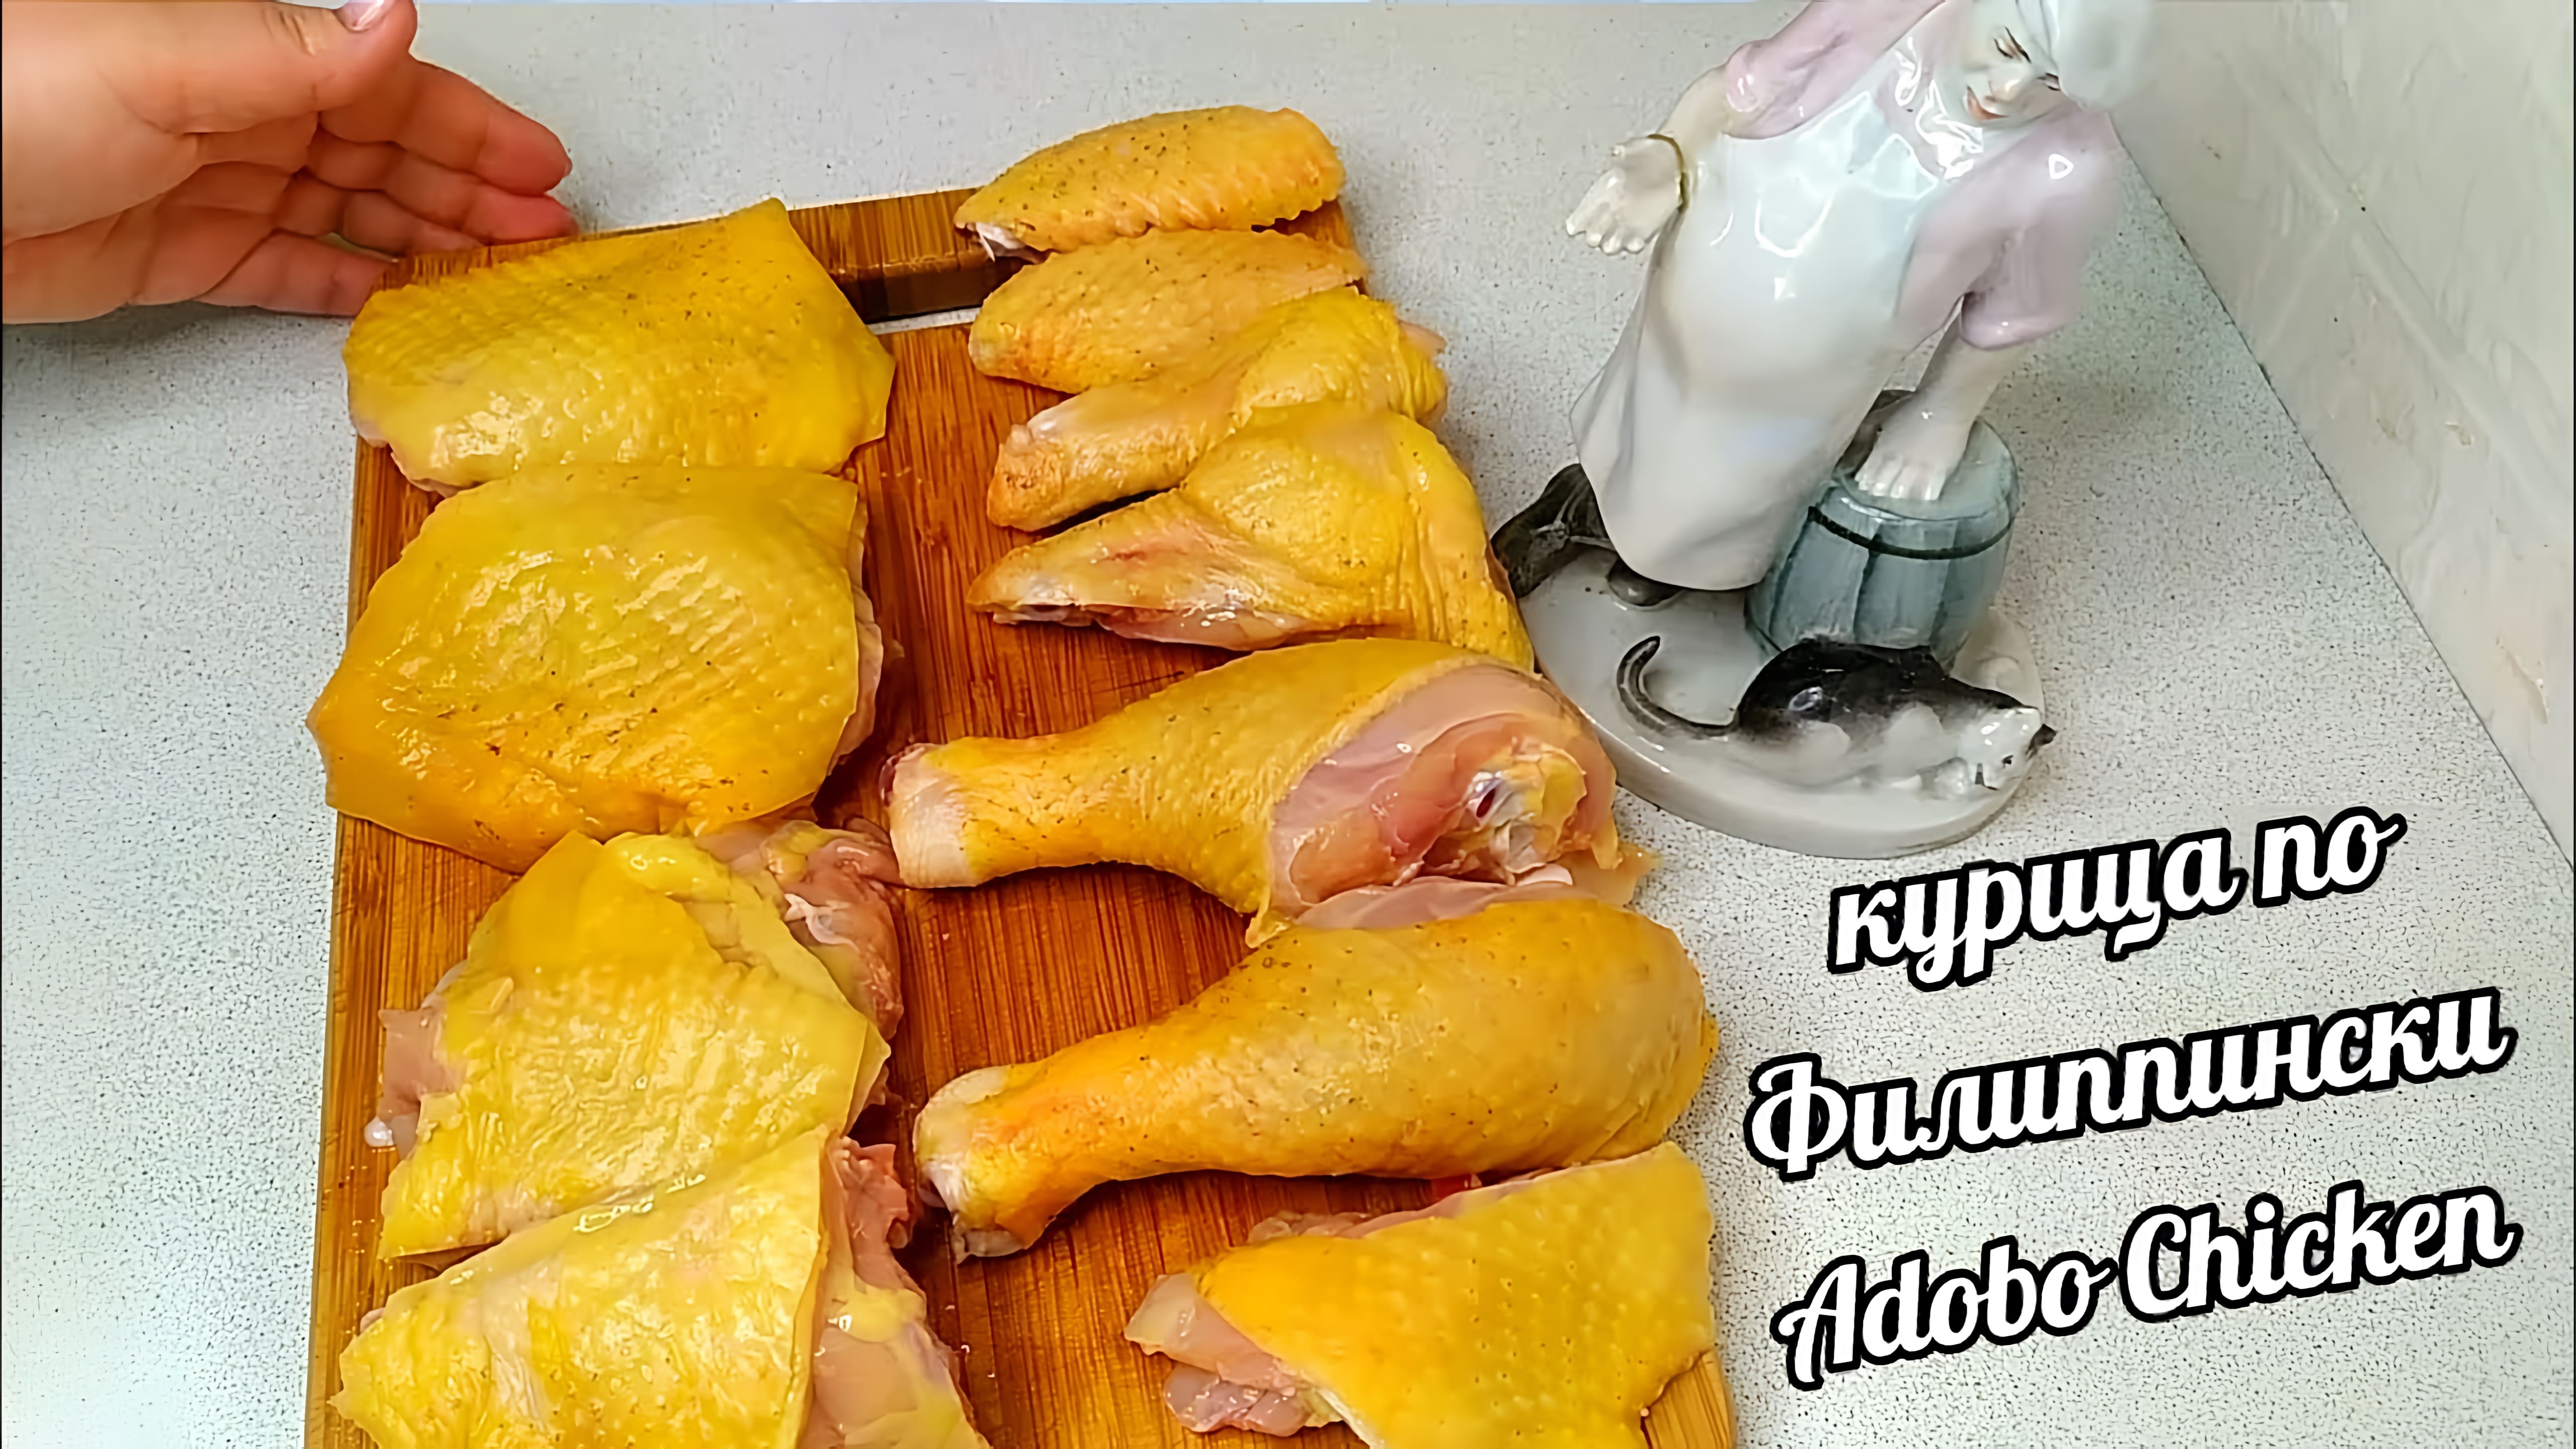 Видео: Забудьте про цыплёнка Тапака и курицу гриль! Курица по-Филиппински сразит вас своим волшебным вкусом